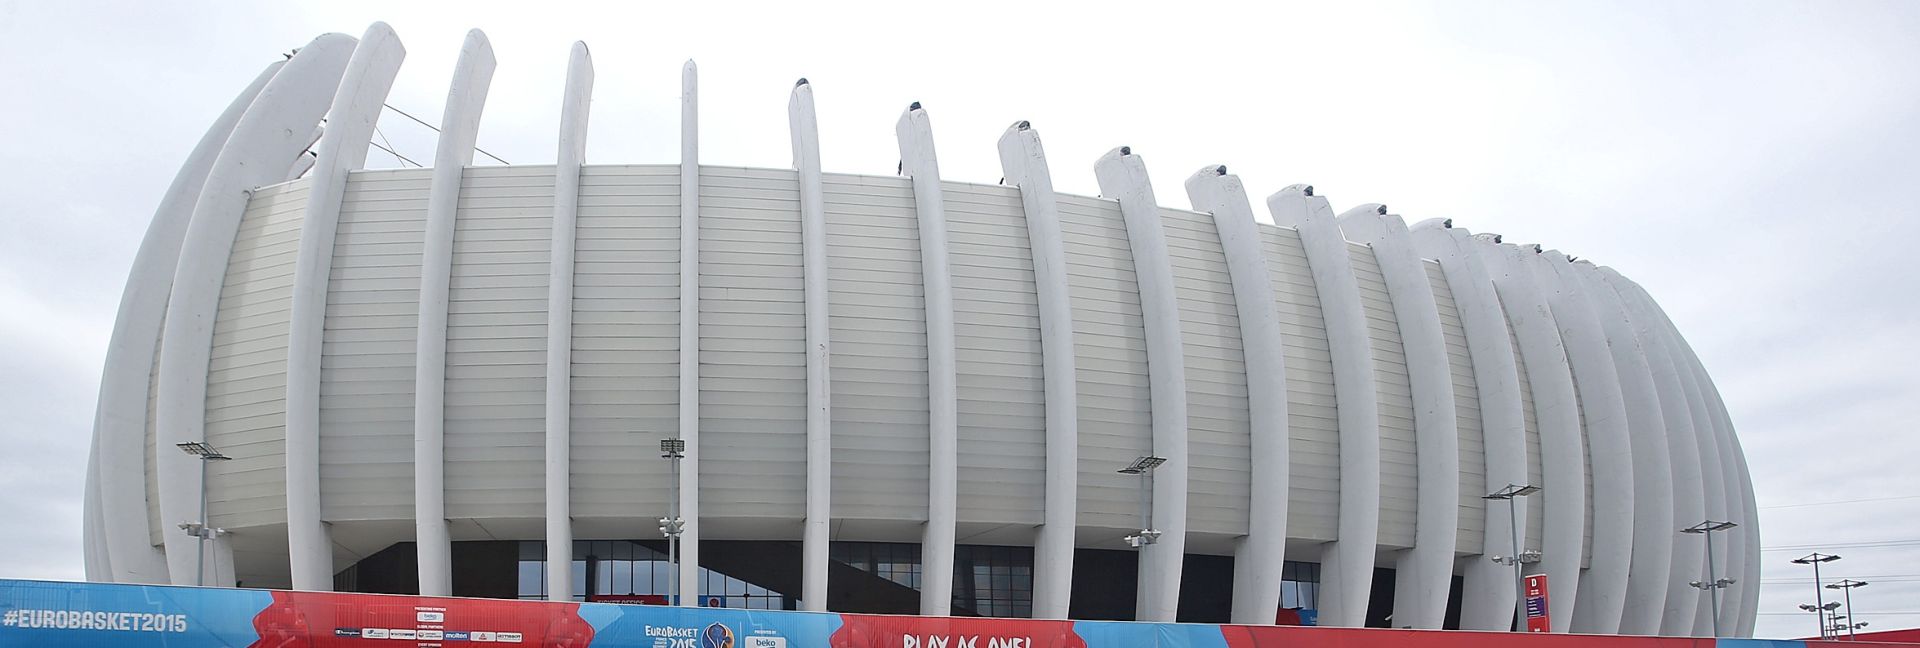 04.09.2015., Zagreb, Arena Zagreb - Posljednje pripreme uoci pocetka Eurobasketa 2015.
Photo: Igor Kralj/PIXSELL